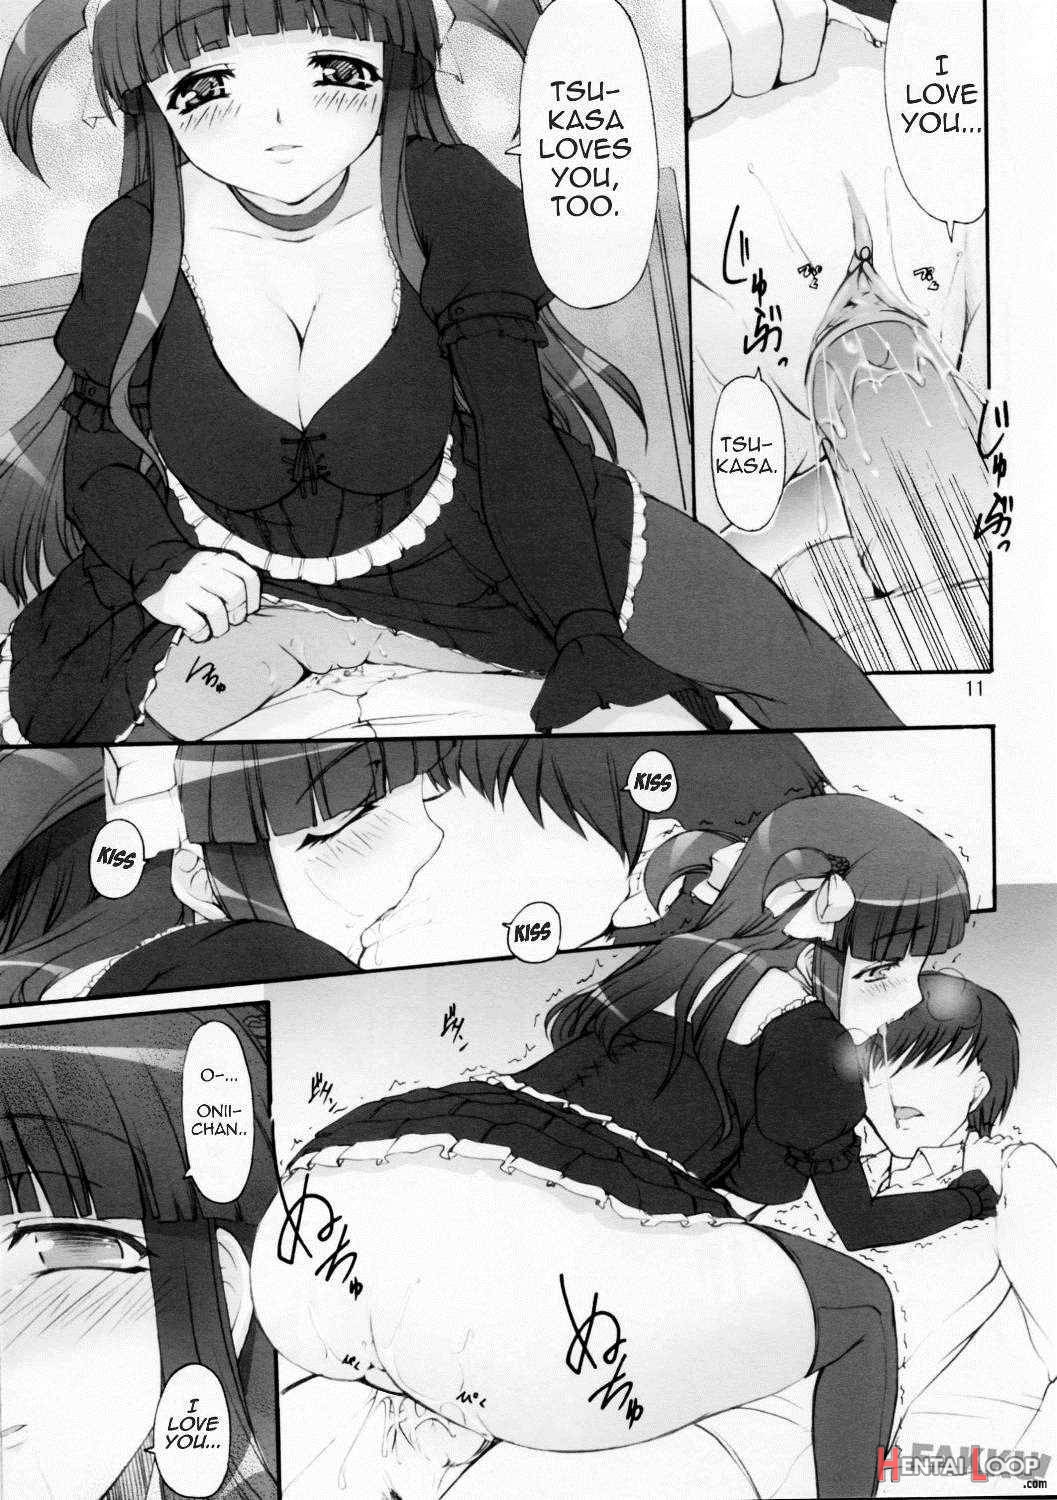 Tsukasa Valentine Dream page 11